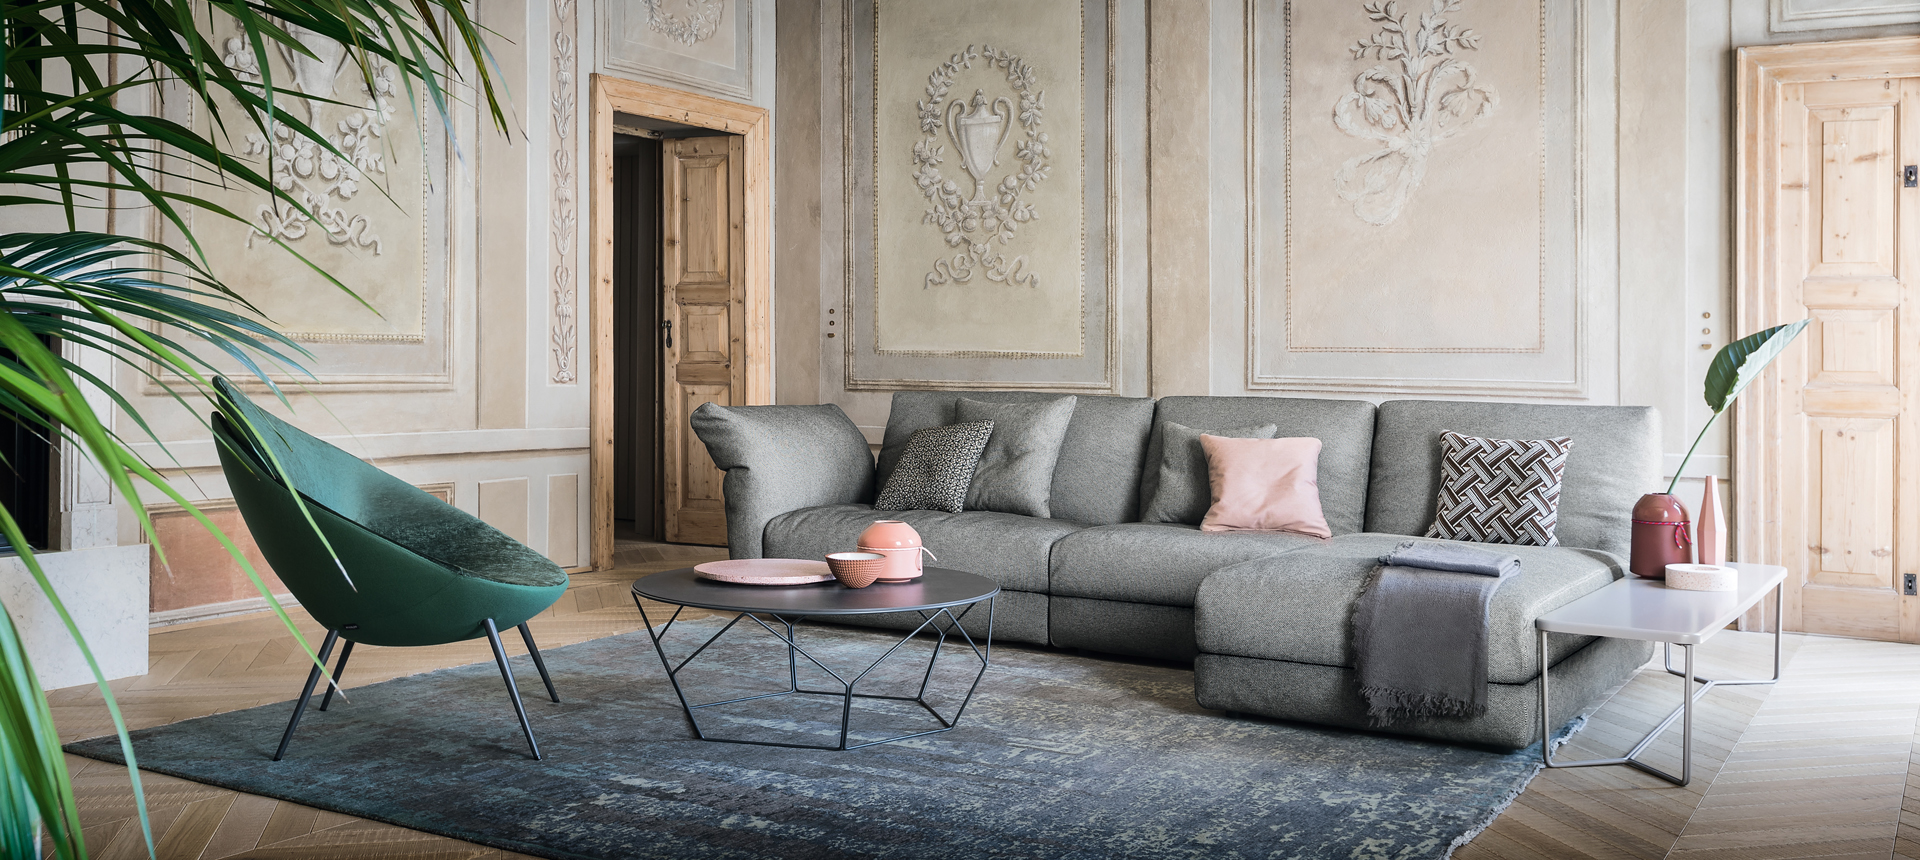 Contemporary Living Room Furniture Designer Furniture Luxury Furniture